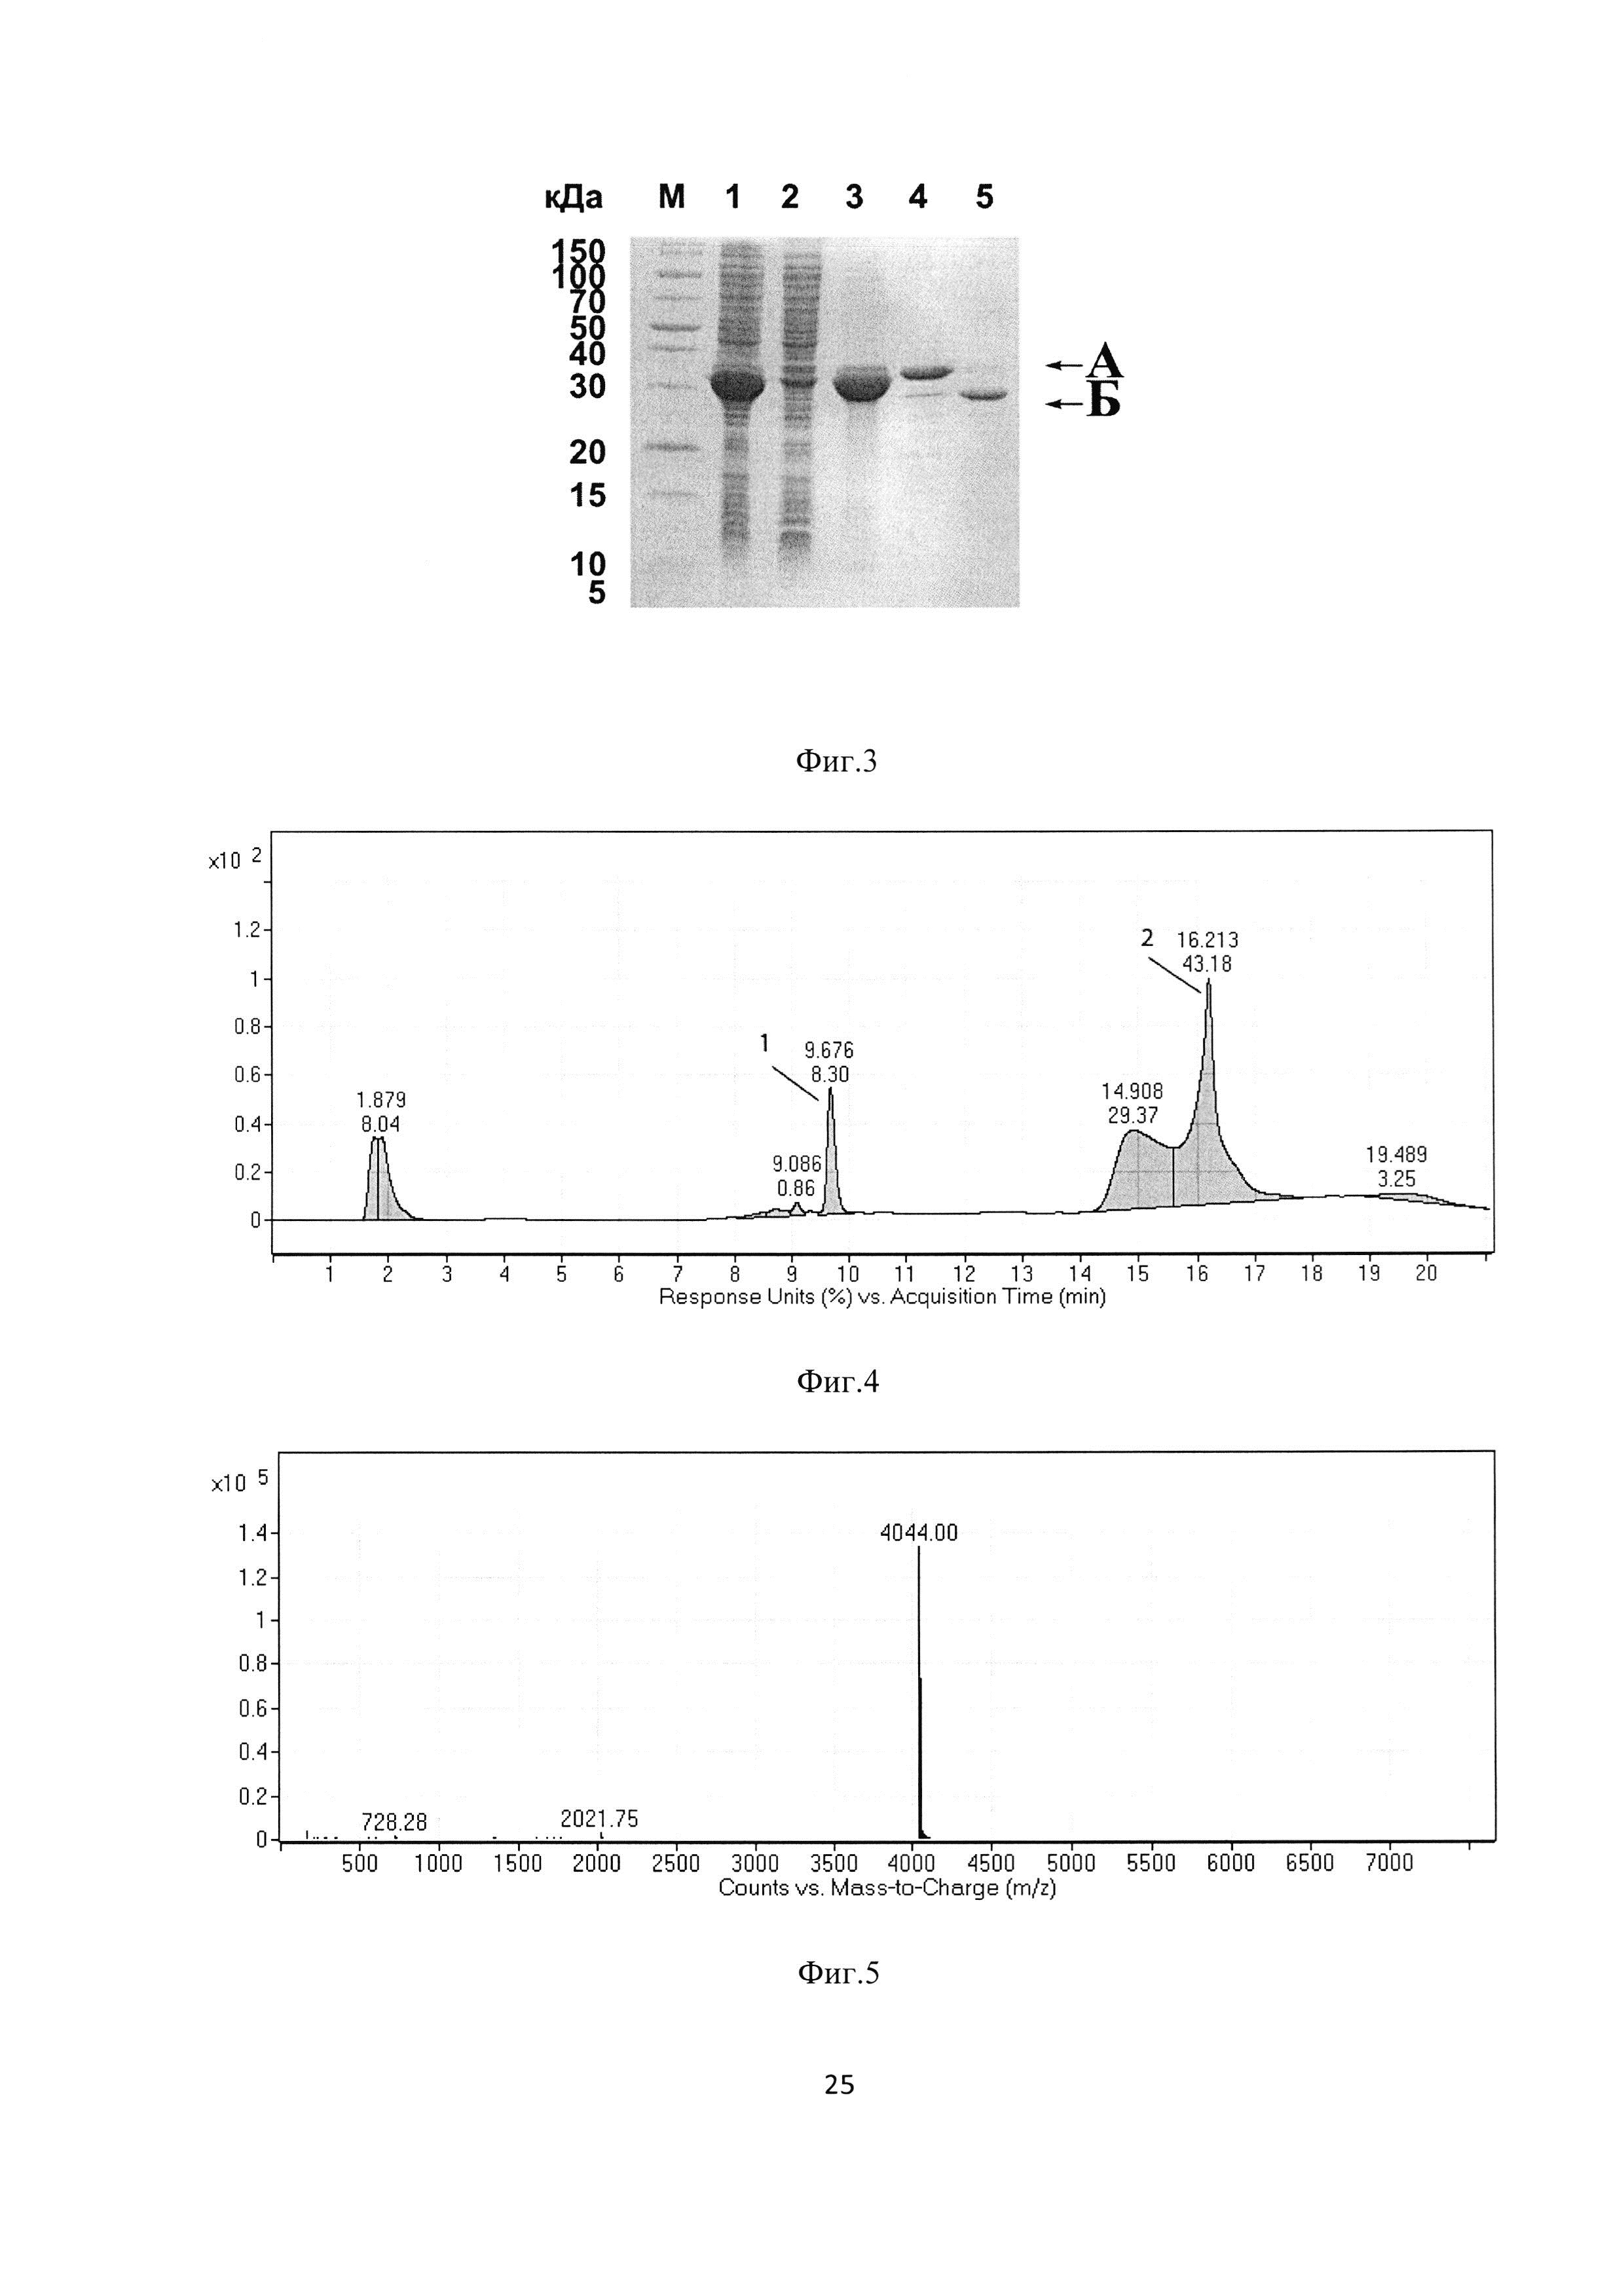 Рекомбинантная плазмидная ДНК pERIG-PGS, кодирующая гибридный белок, способный к автокаталитическому расщеплению с образованием антиангиогенного пептида пигастина - производного фрагмента [44-77] фактора роста пигментного эпителия человека, штамм Escherichia coli BL21(DE3)/pERIG-PGS - продуцент указанного белка, и способ получения рекомбинантного антиангиогенного пептида